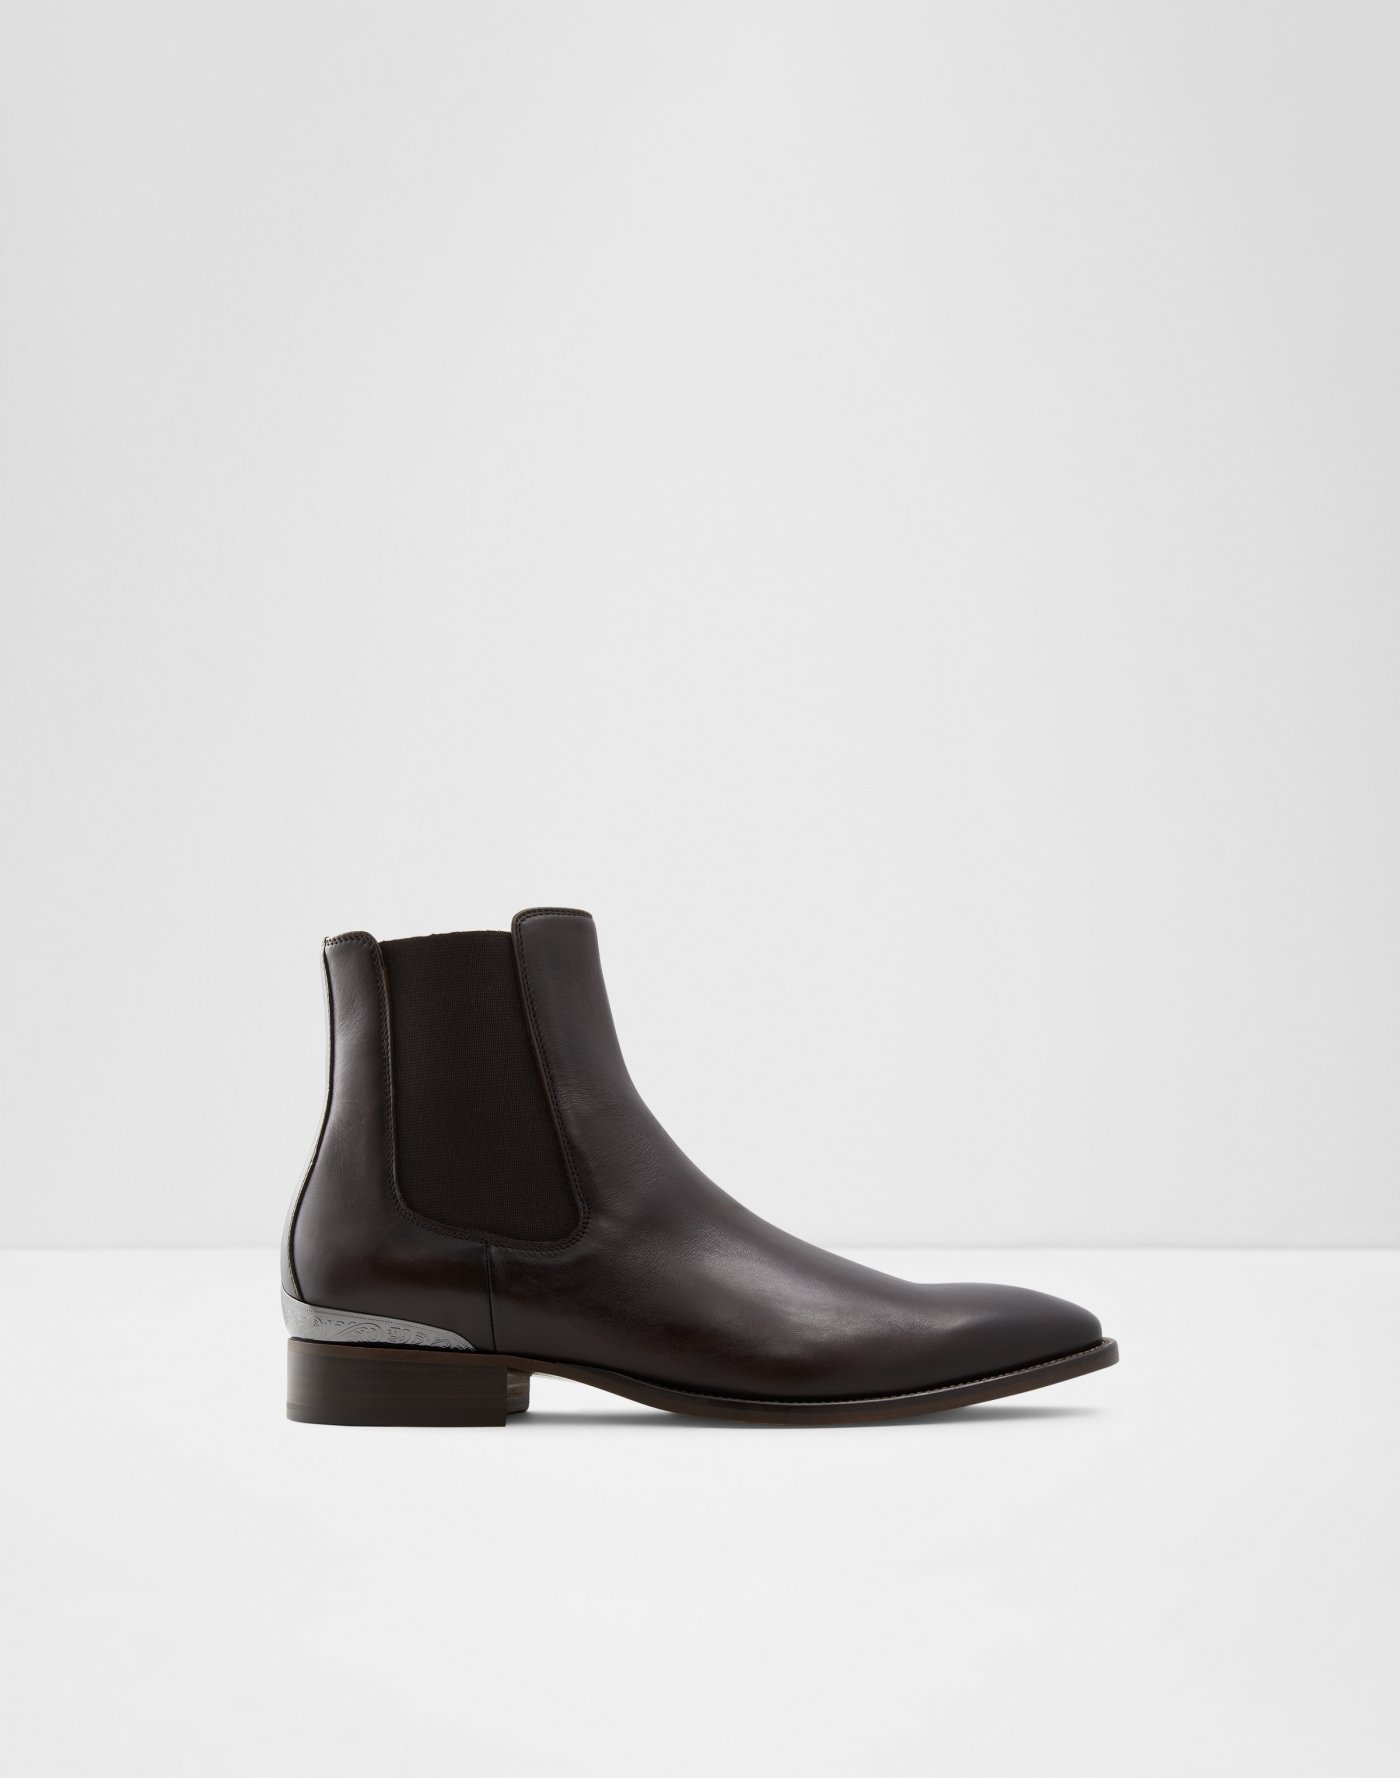 Shoes for Men | All Men's shoes Size 7 | ALDO US